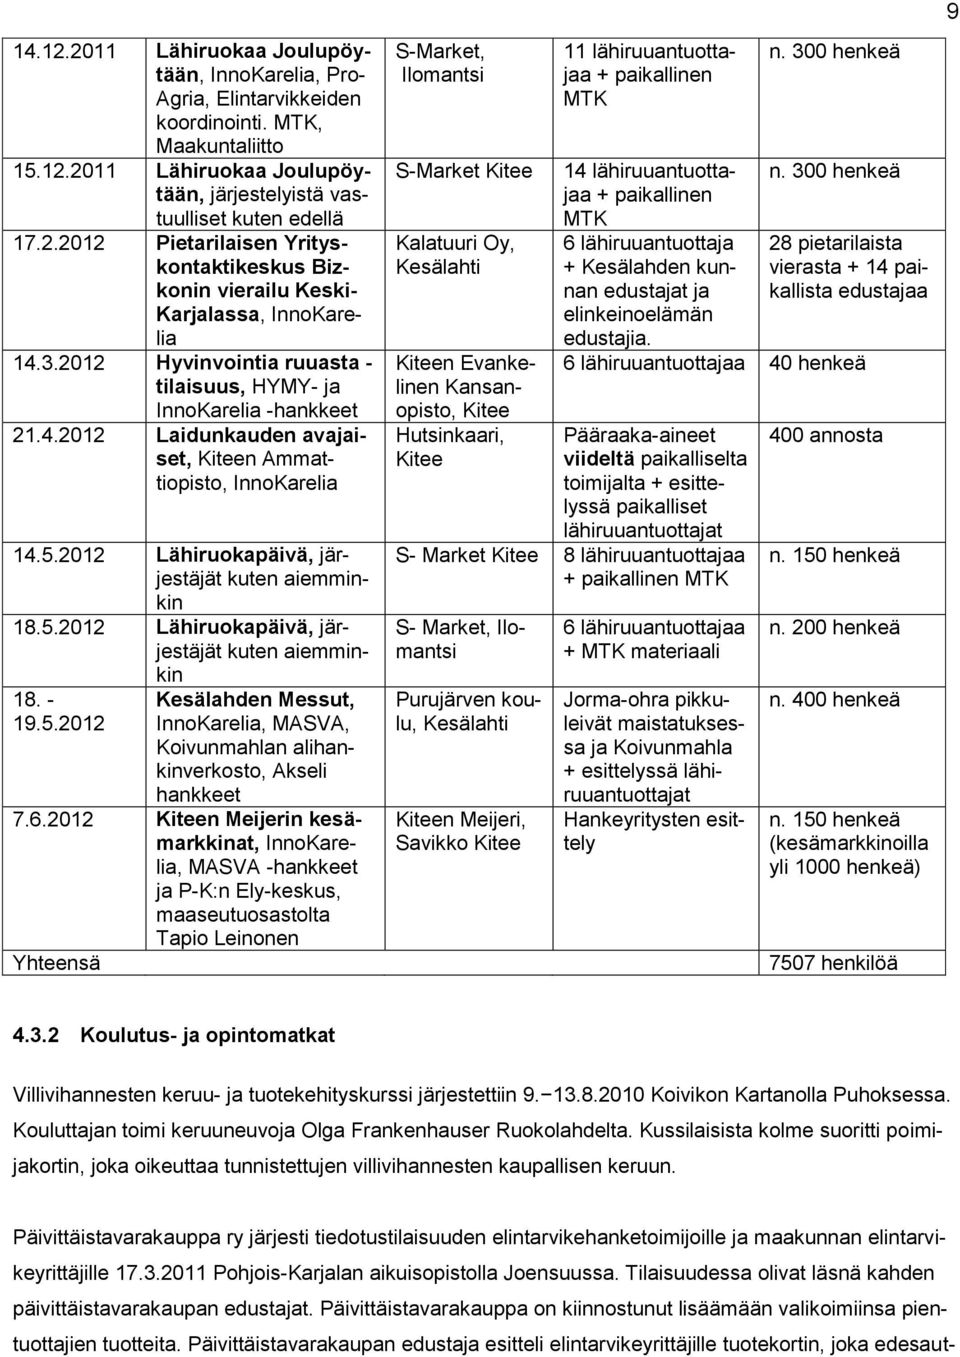 - 19.5.2012 kin Kesälahden Messut, InnoKarelia, MASVA, Koivunmahlan alihankinverkosto, Akseli hankkeet 7.6.